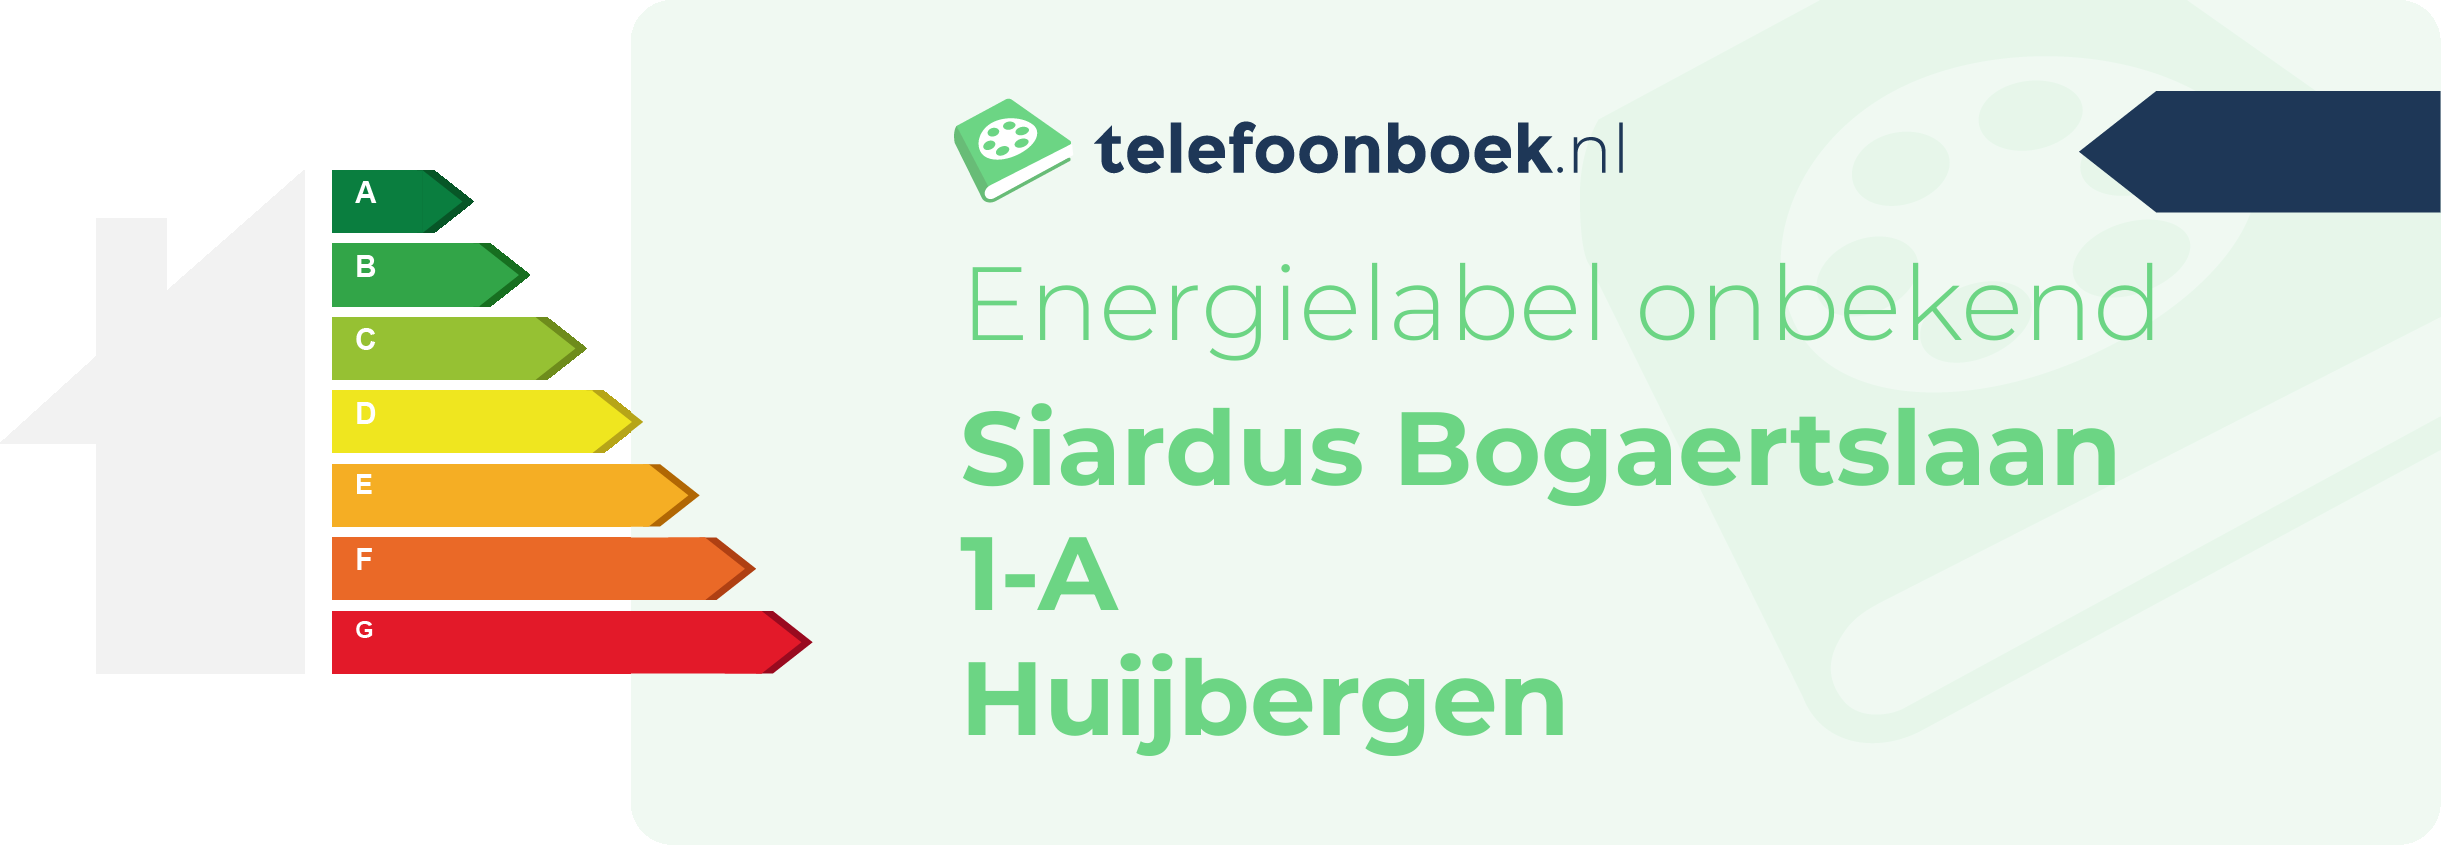 Energielabel Siardus Bogaertslaan 1-A Huijbergen